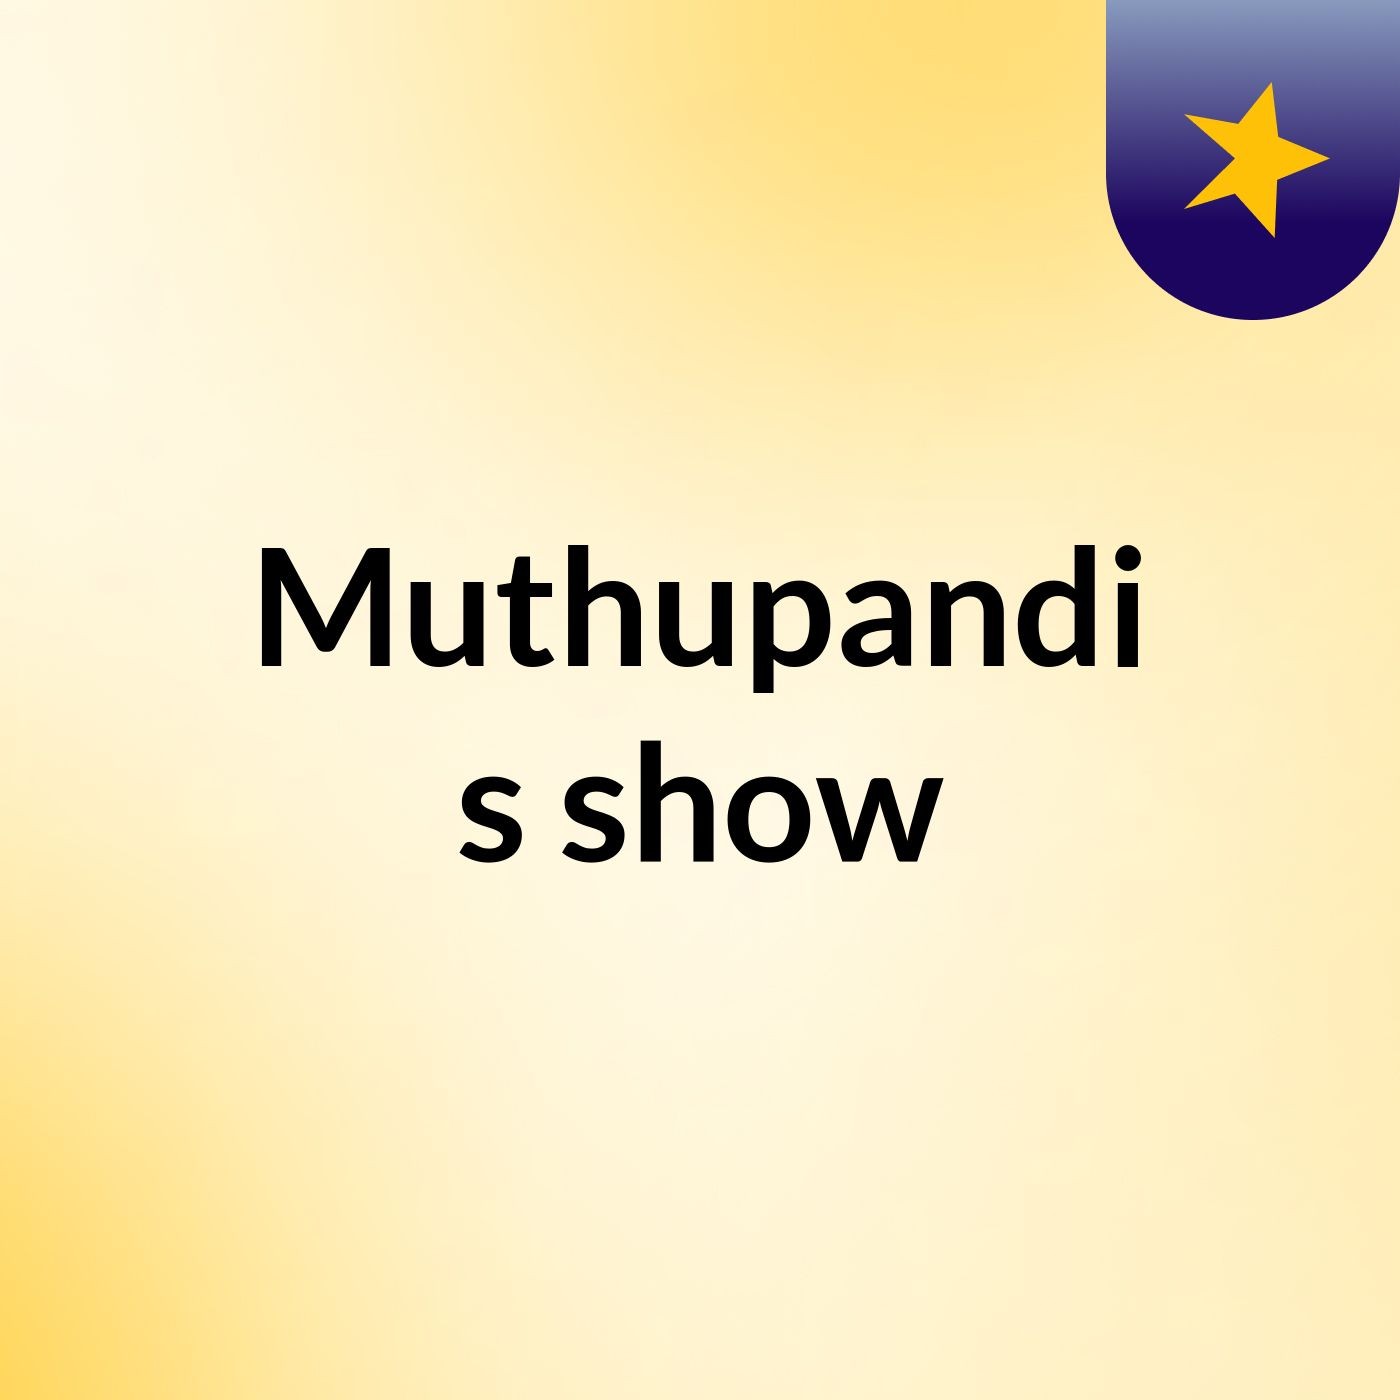 Muthupandi's show